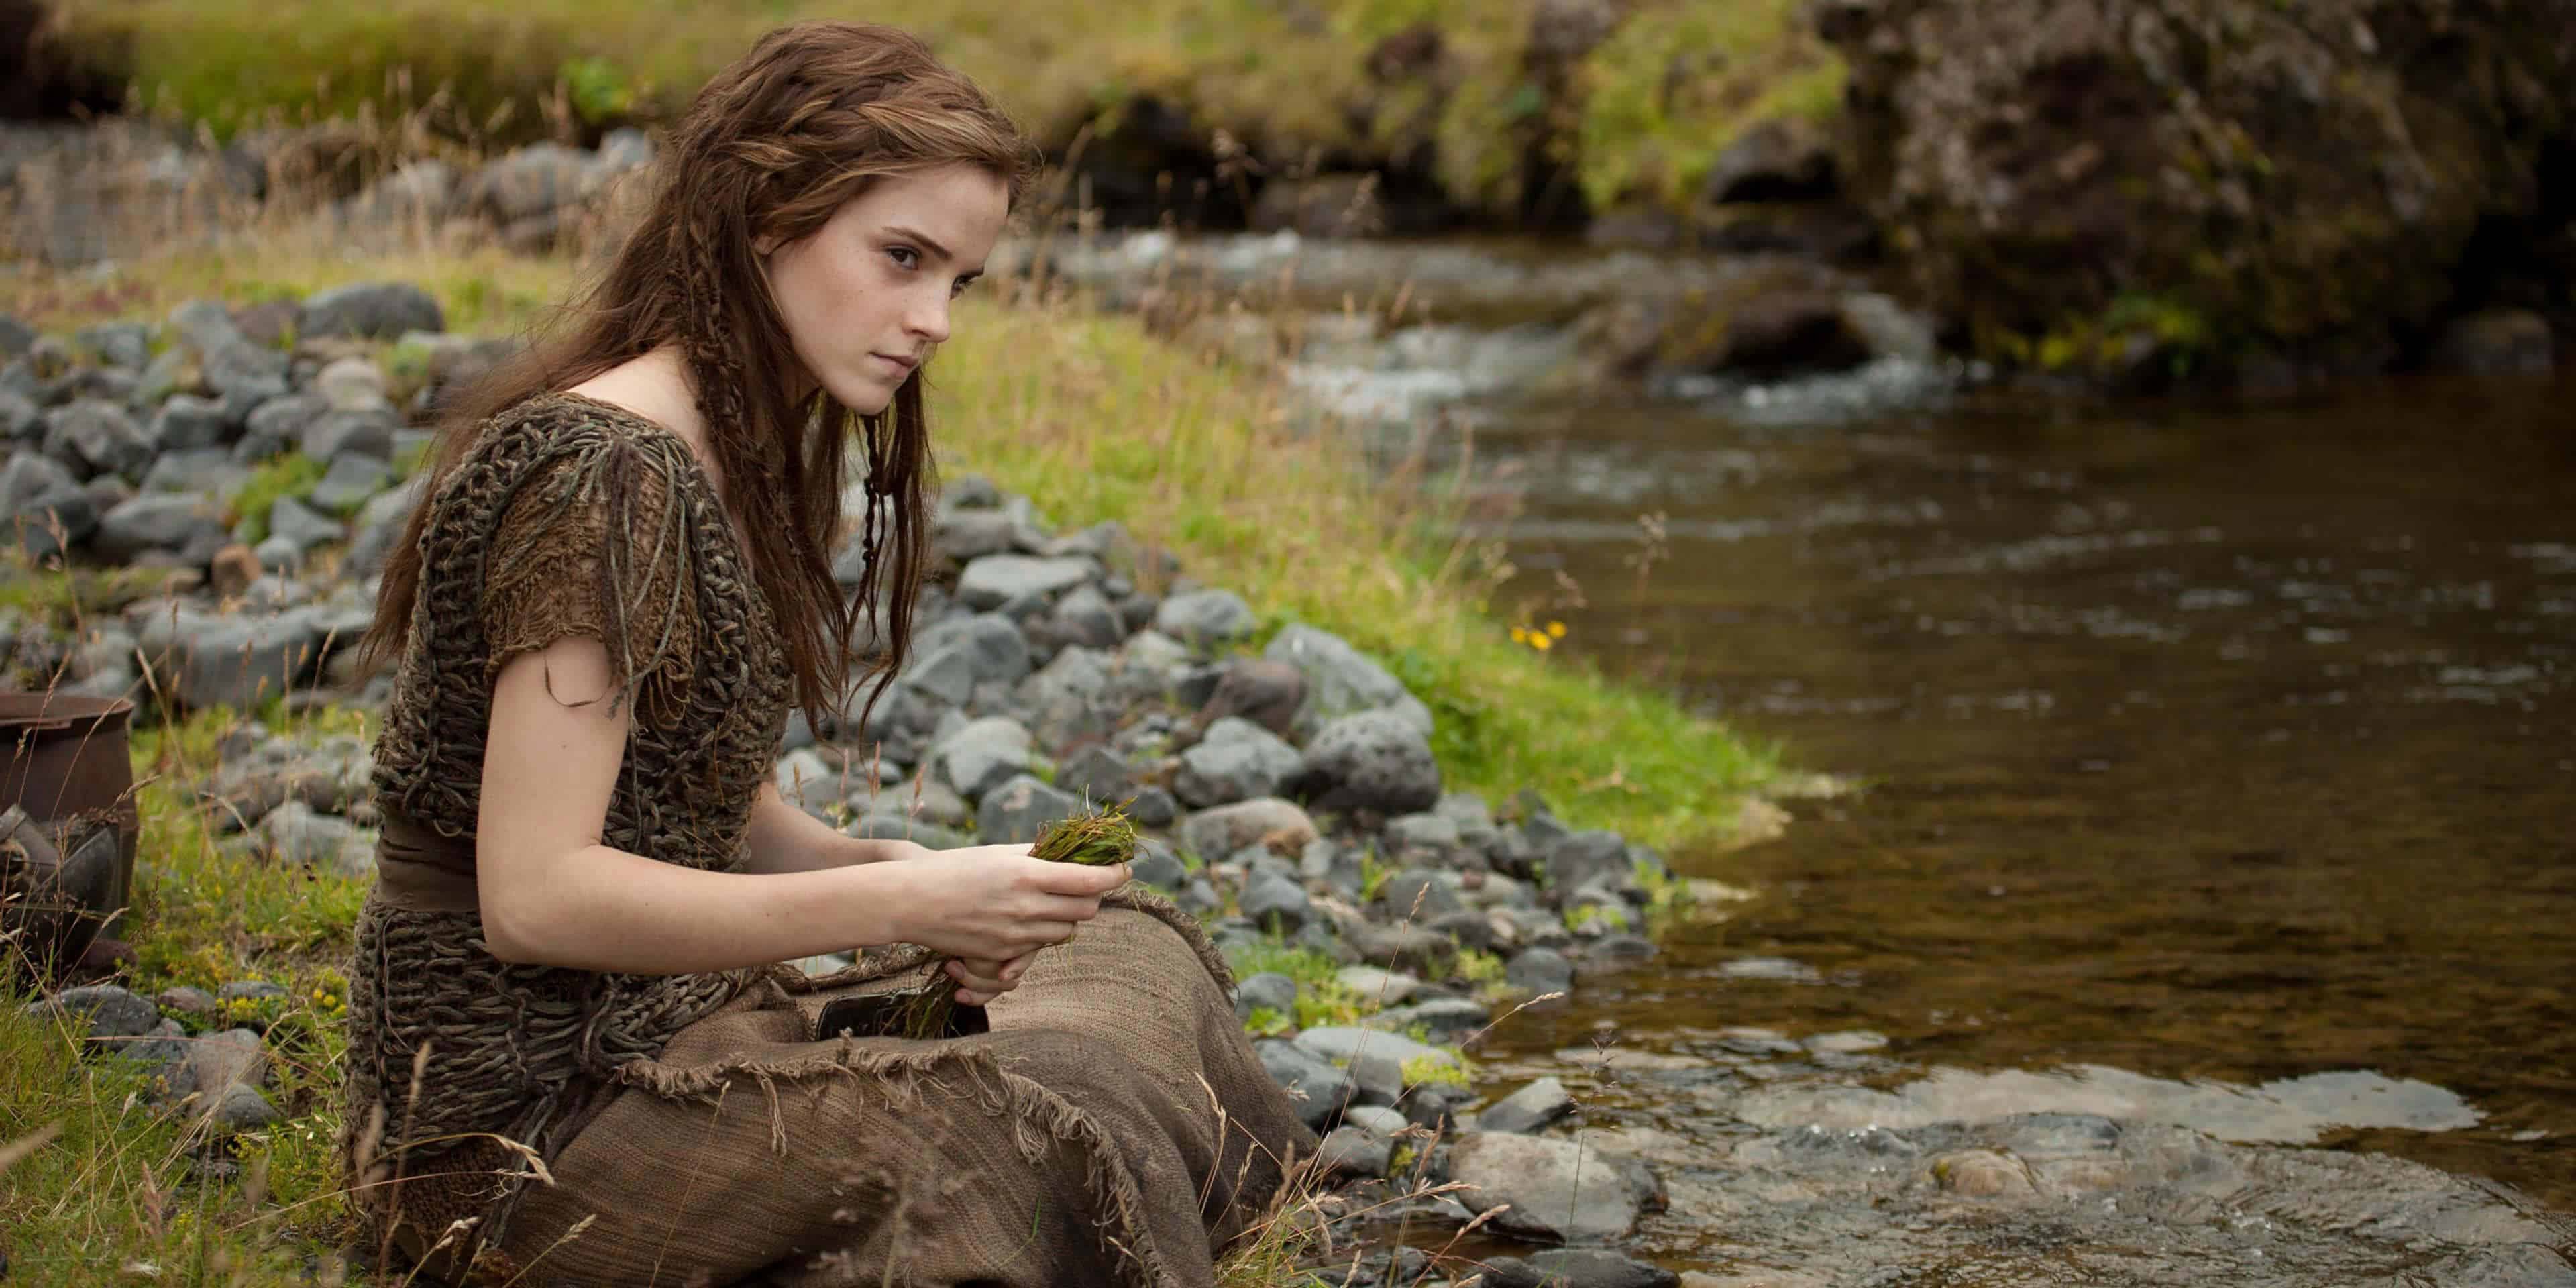 Emma Watson as Ila in Noah